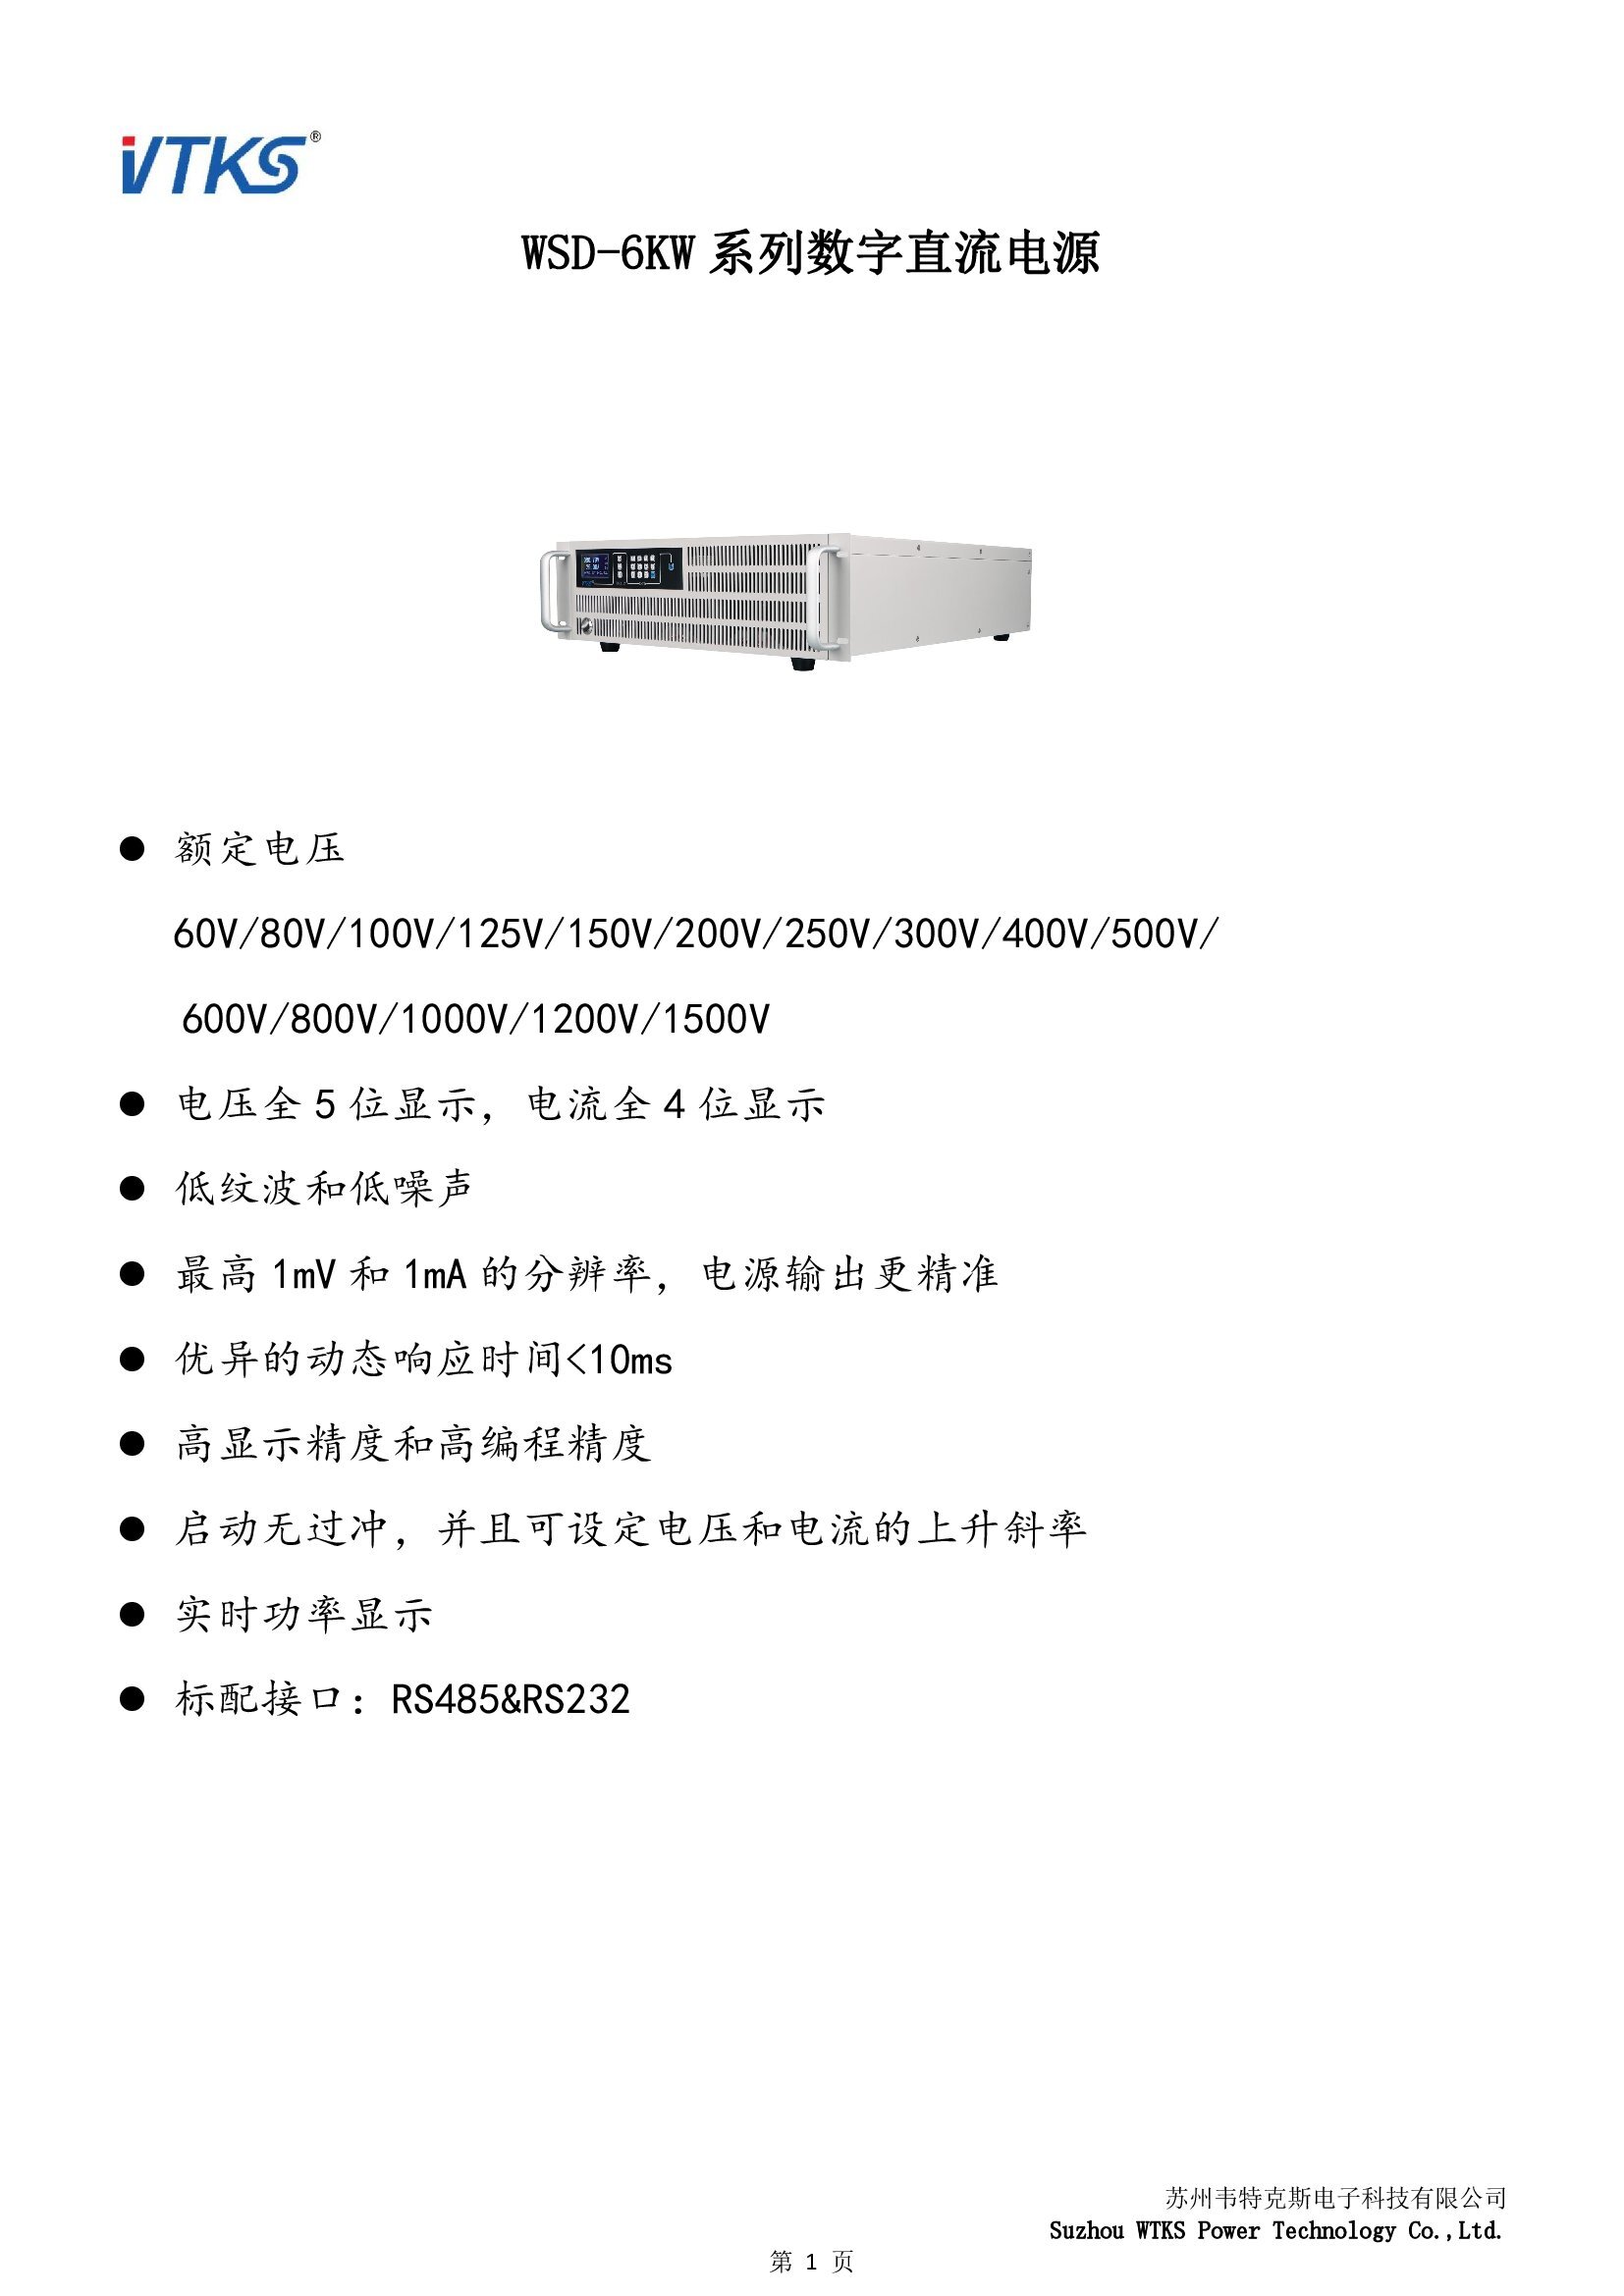 WSD-6KW系列数字直流电源技术资料_V1.06_00001.jpg